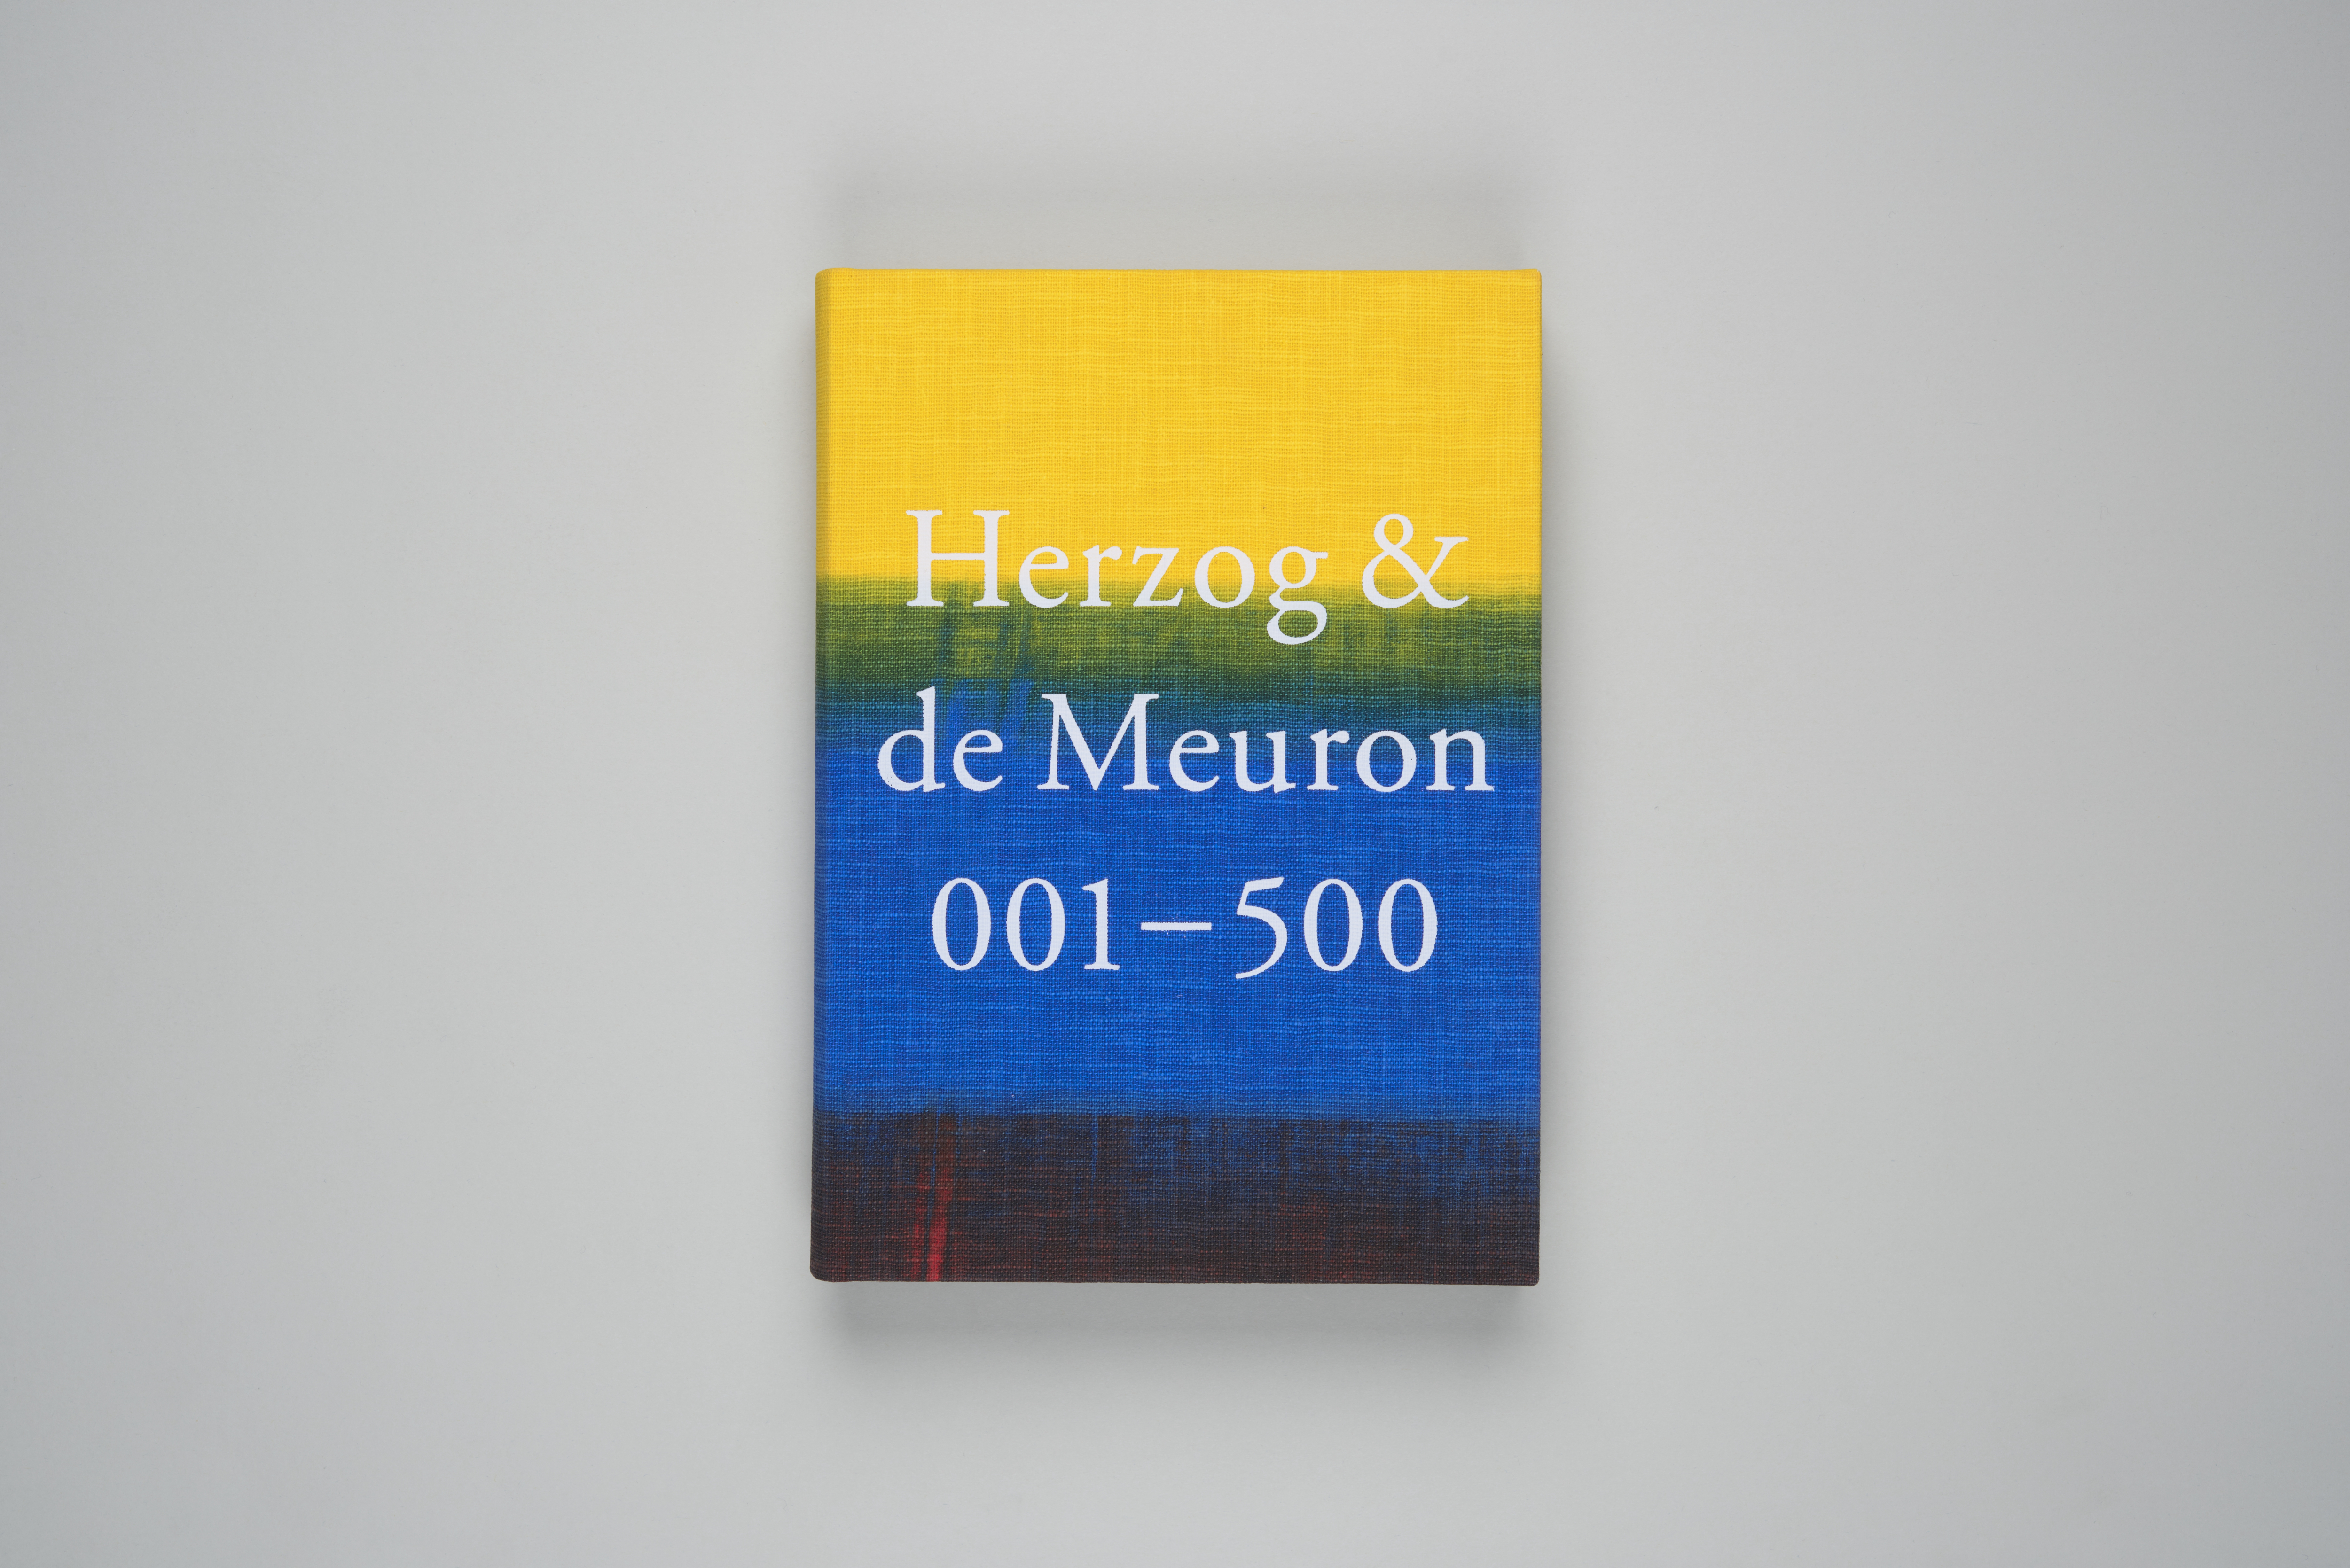 Herzog & de Meuron 001–500 – Herzog & de Meuron